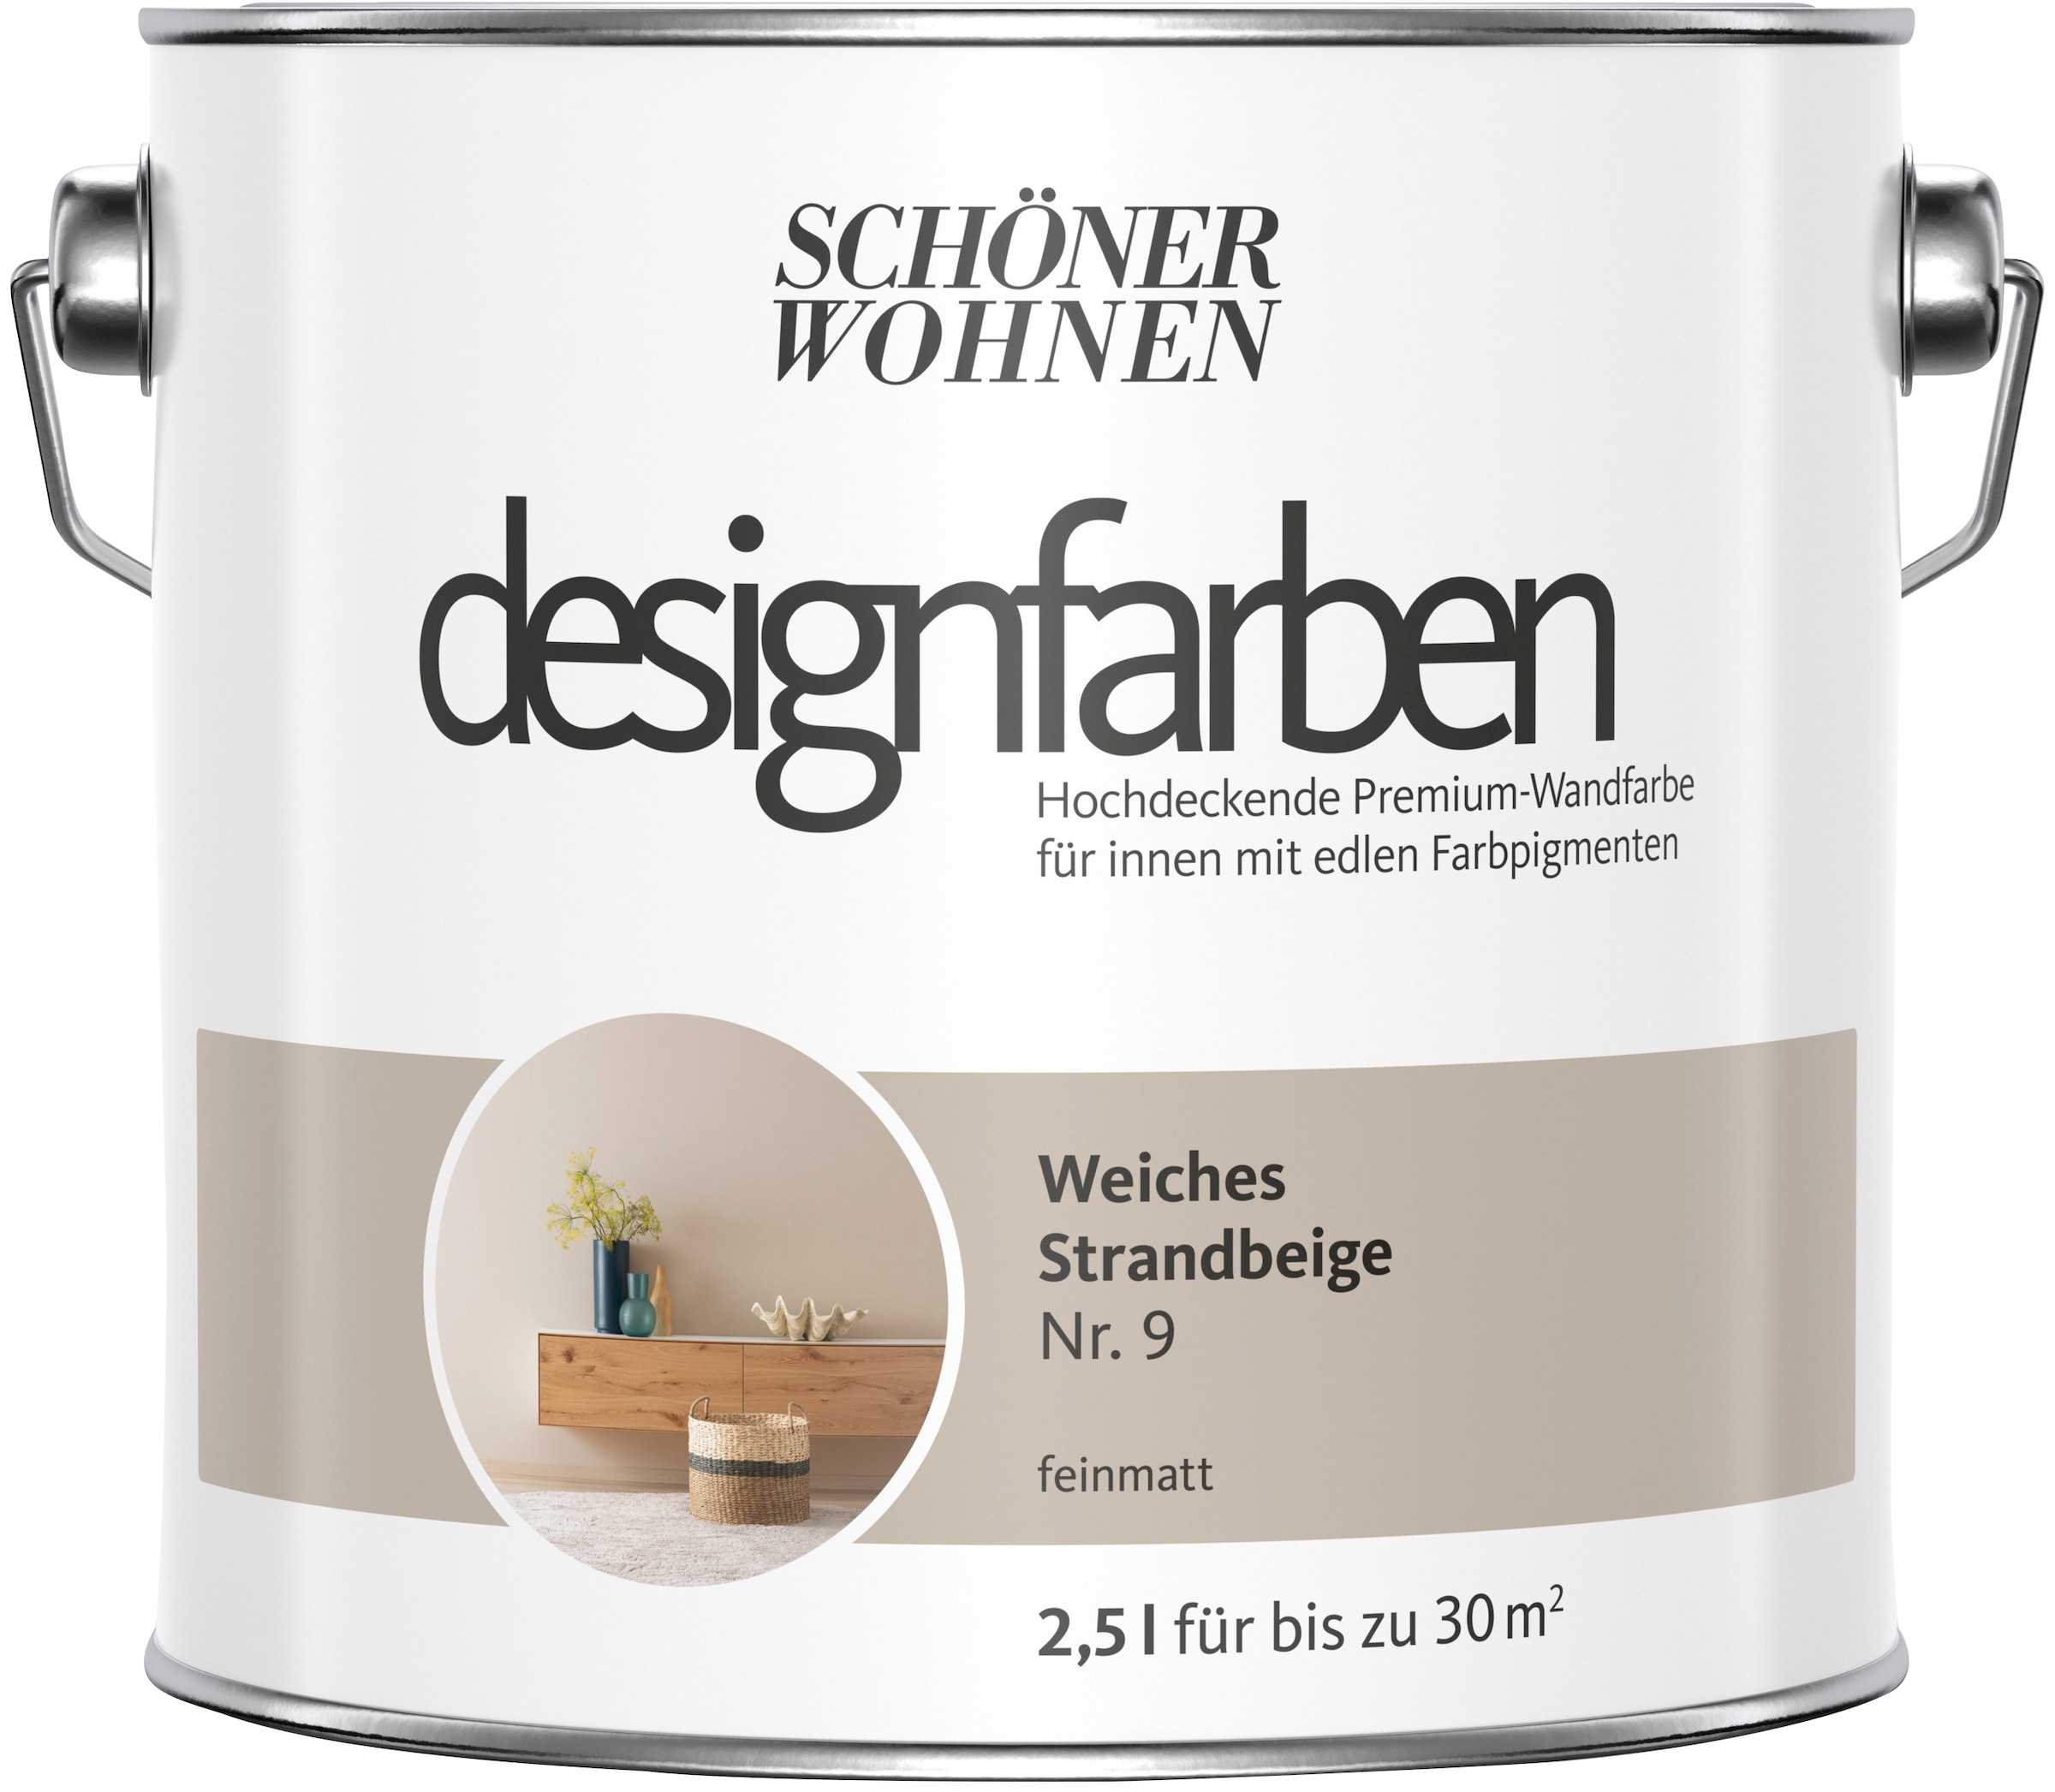 SCHÖNER WOHNEN FARBE Wandfarbe »designfarben«, 2,5 Liter, Weiches Stranbeige Nr. 9, hochdeckende Premium-Wandfarbe